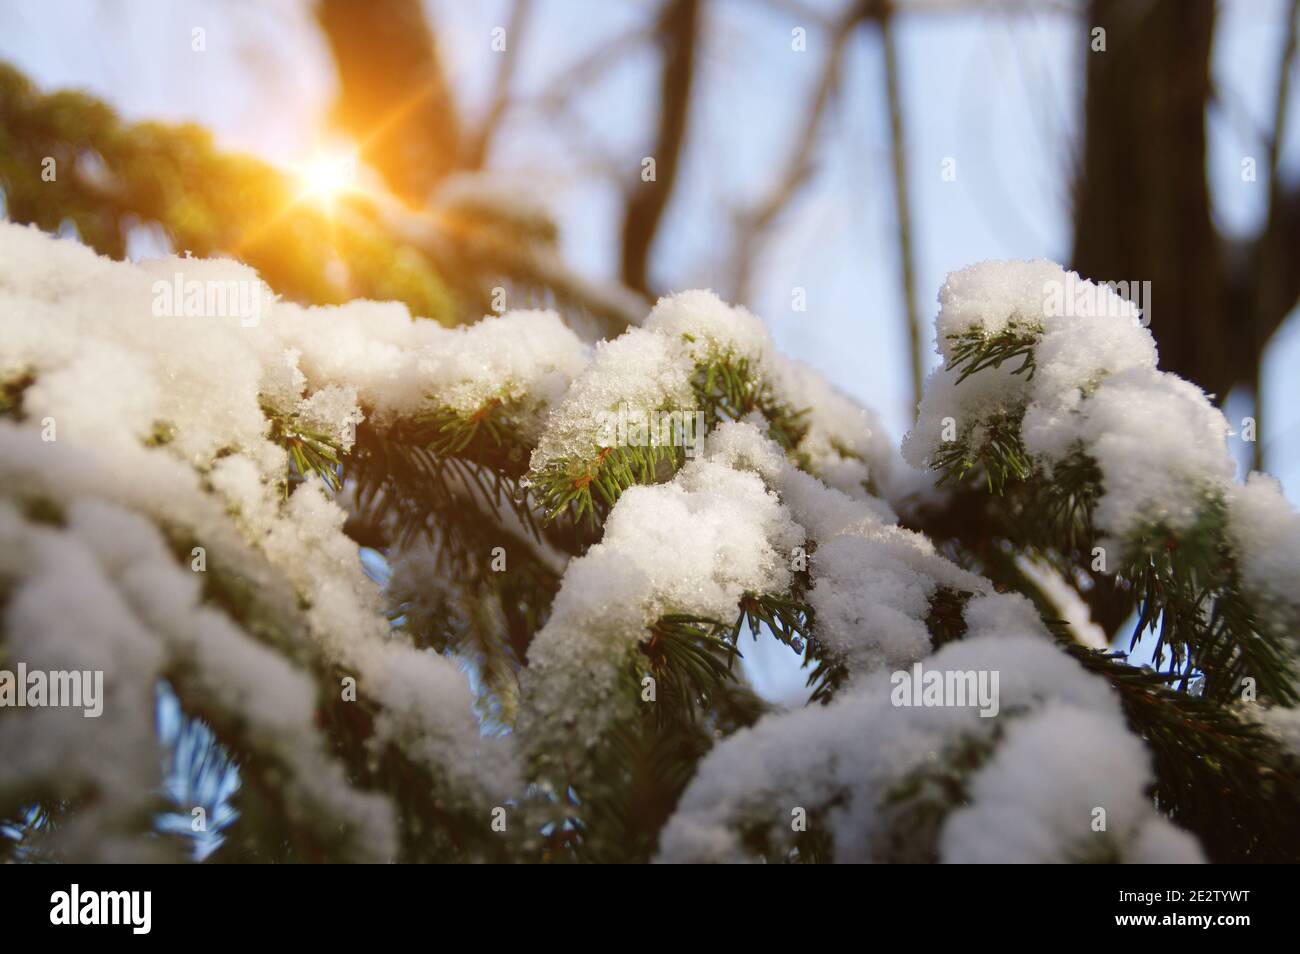 Schnee auf dem Baum Äste in der Sonne. Eine Winterschicht Abdeckung von weißen Daunendecke Pflanze durch die Sonne. Schöne saisonale Aussicht auf die Natur. Stockfoto